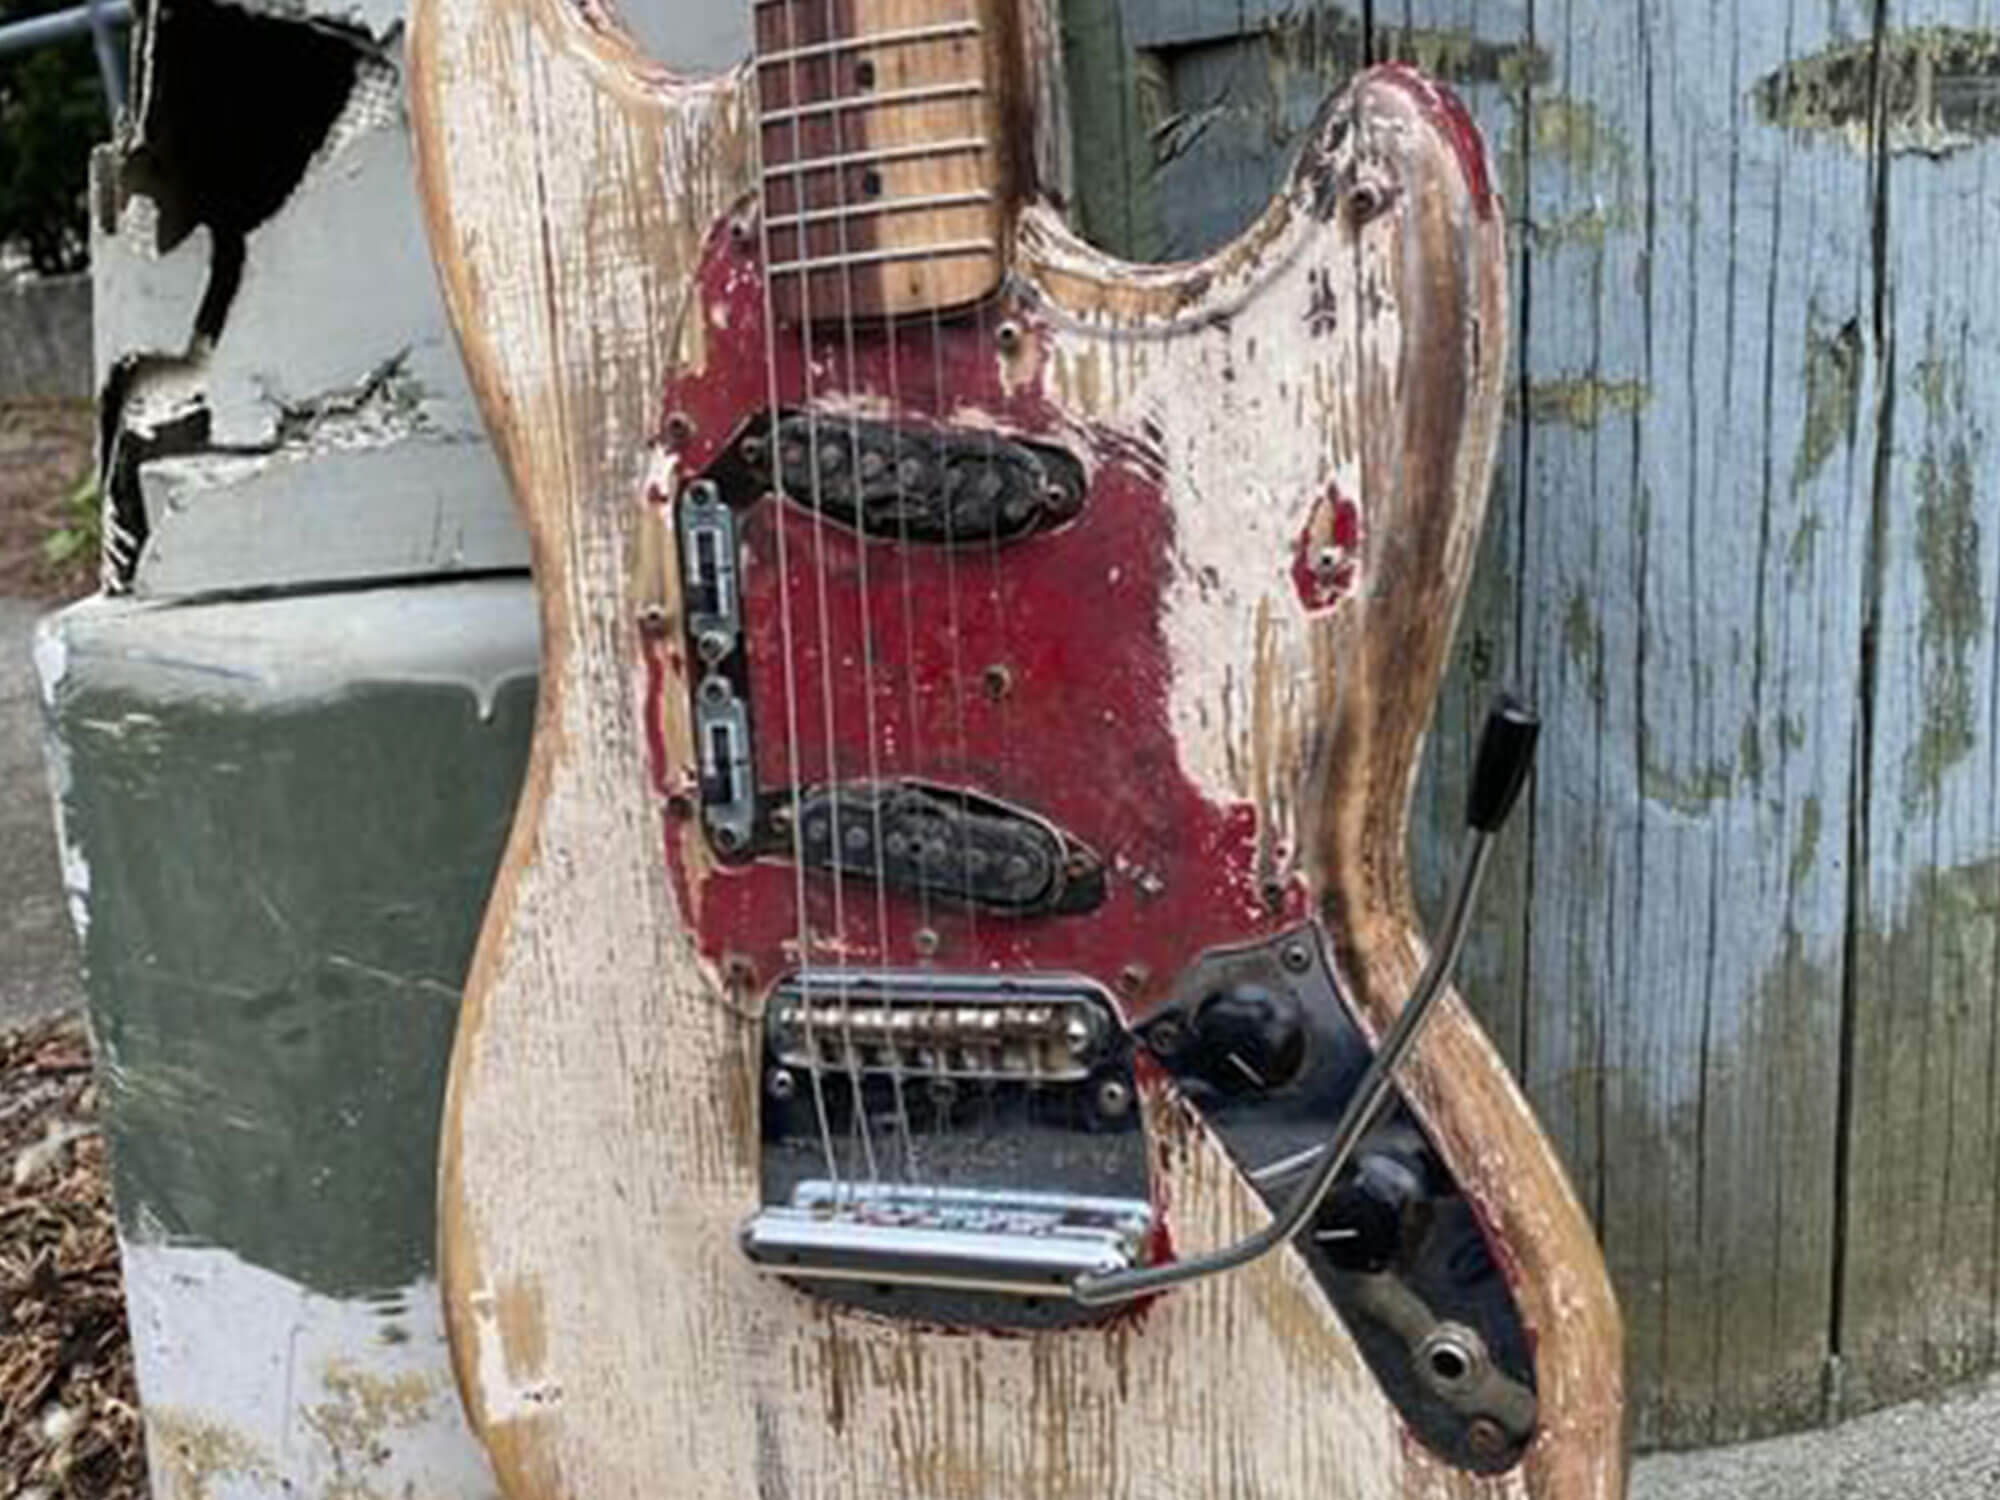 Restored Fender Mustang, the “Methstang”